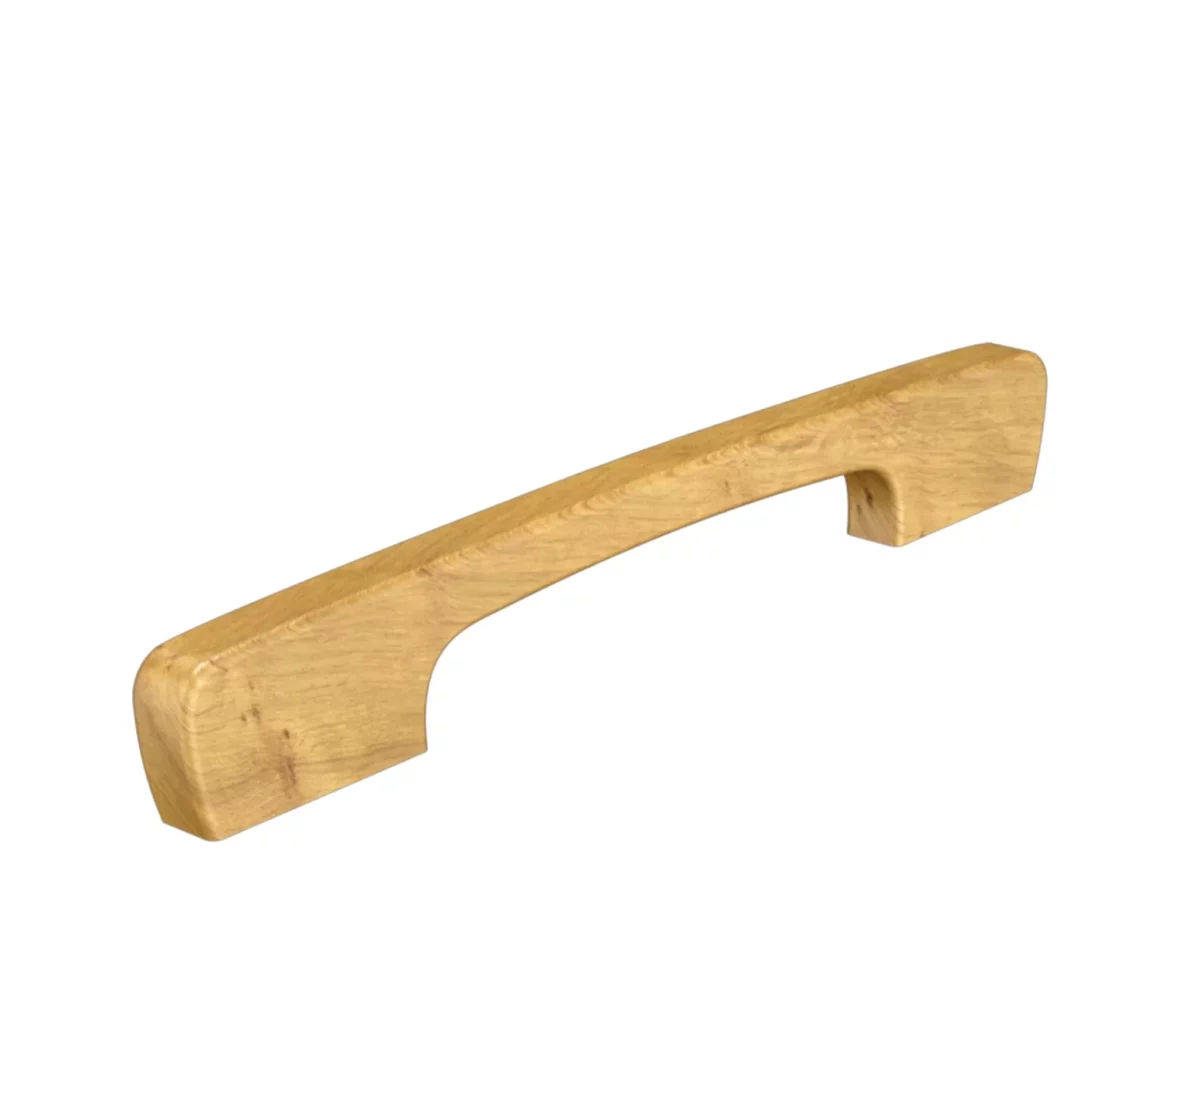 New wooden handles U-2003